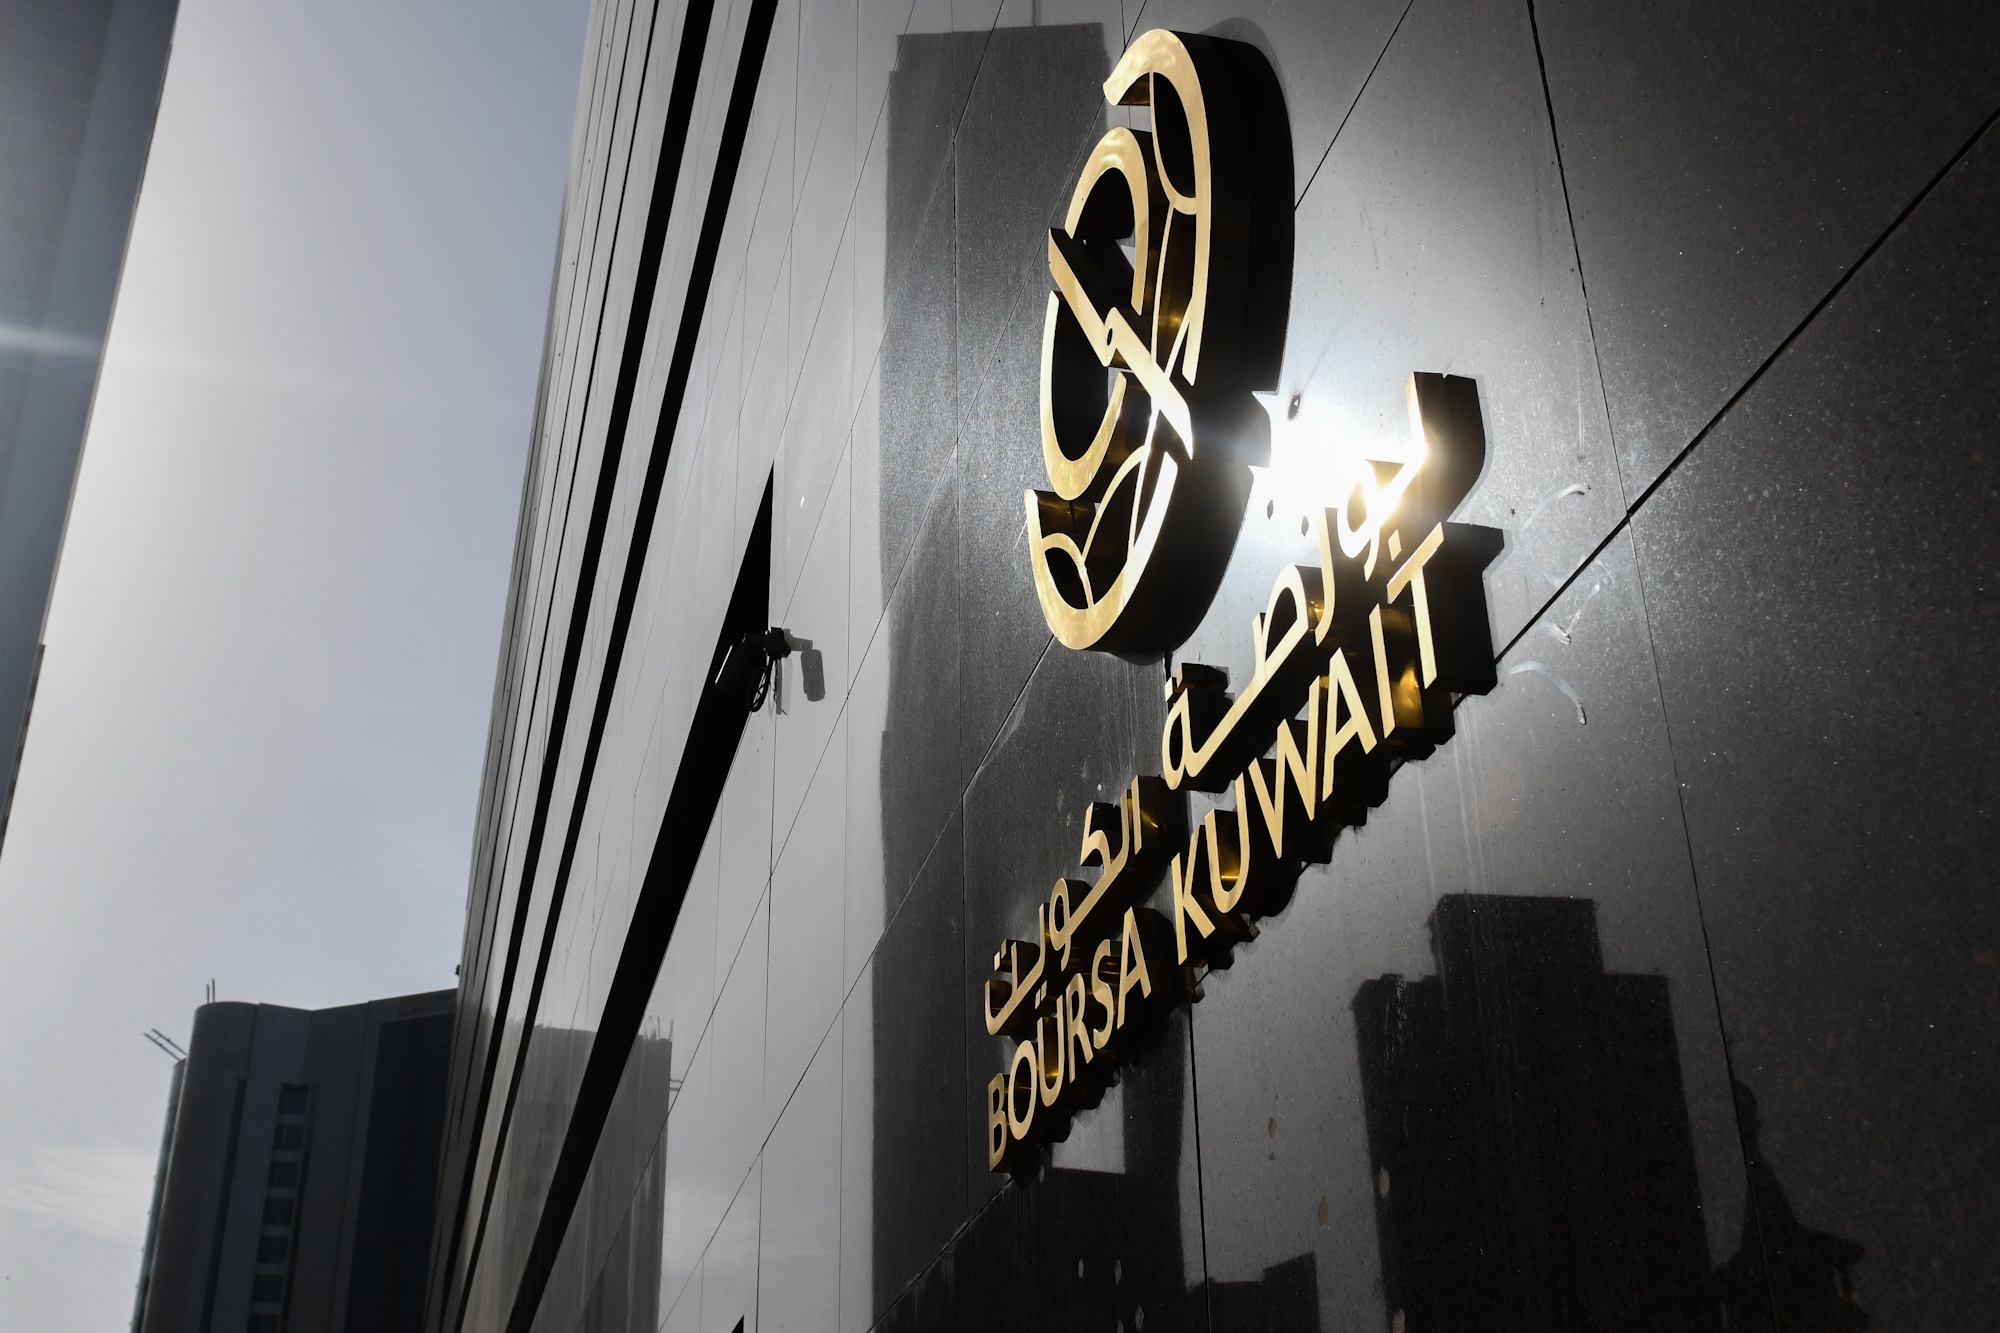 بورصة الكويت تغلق تعاملاتها على ارتفاع مؤشرها العام 3ر20 نقطة ليبلغ 41ر7575 بنسبة 27ر0 في المئة                                                                                                                                                           